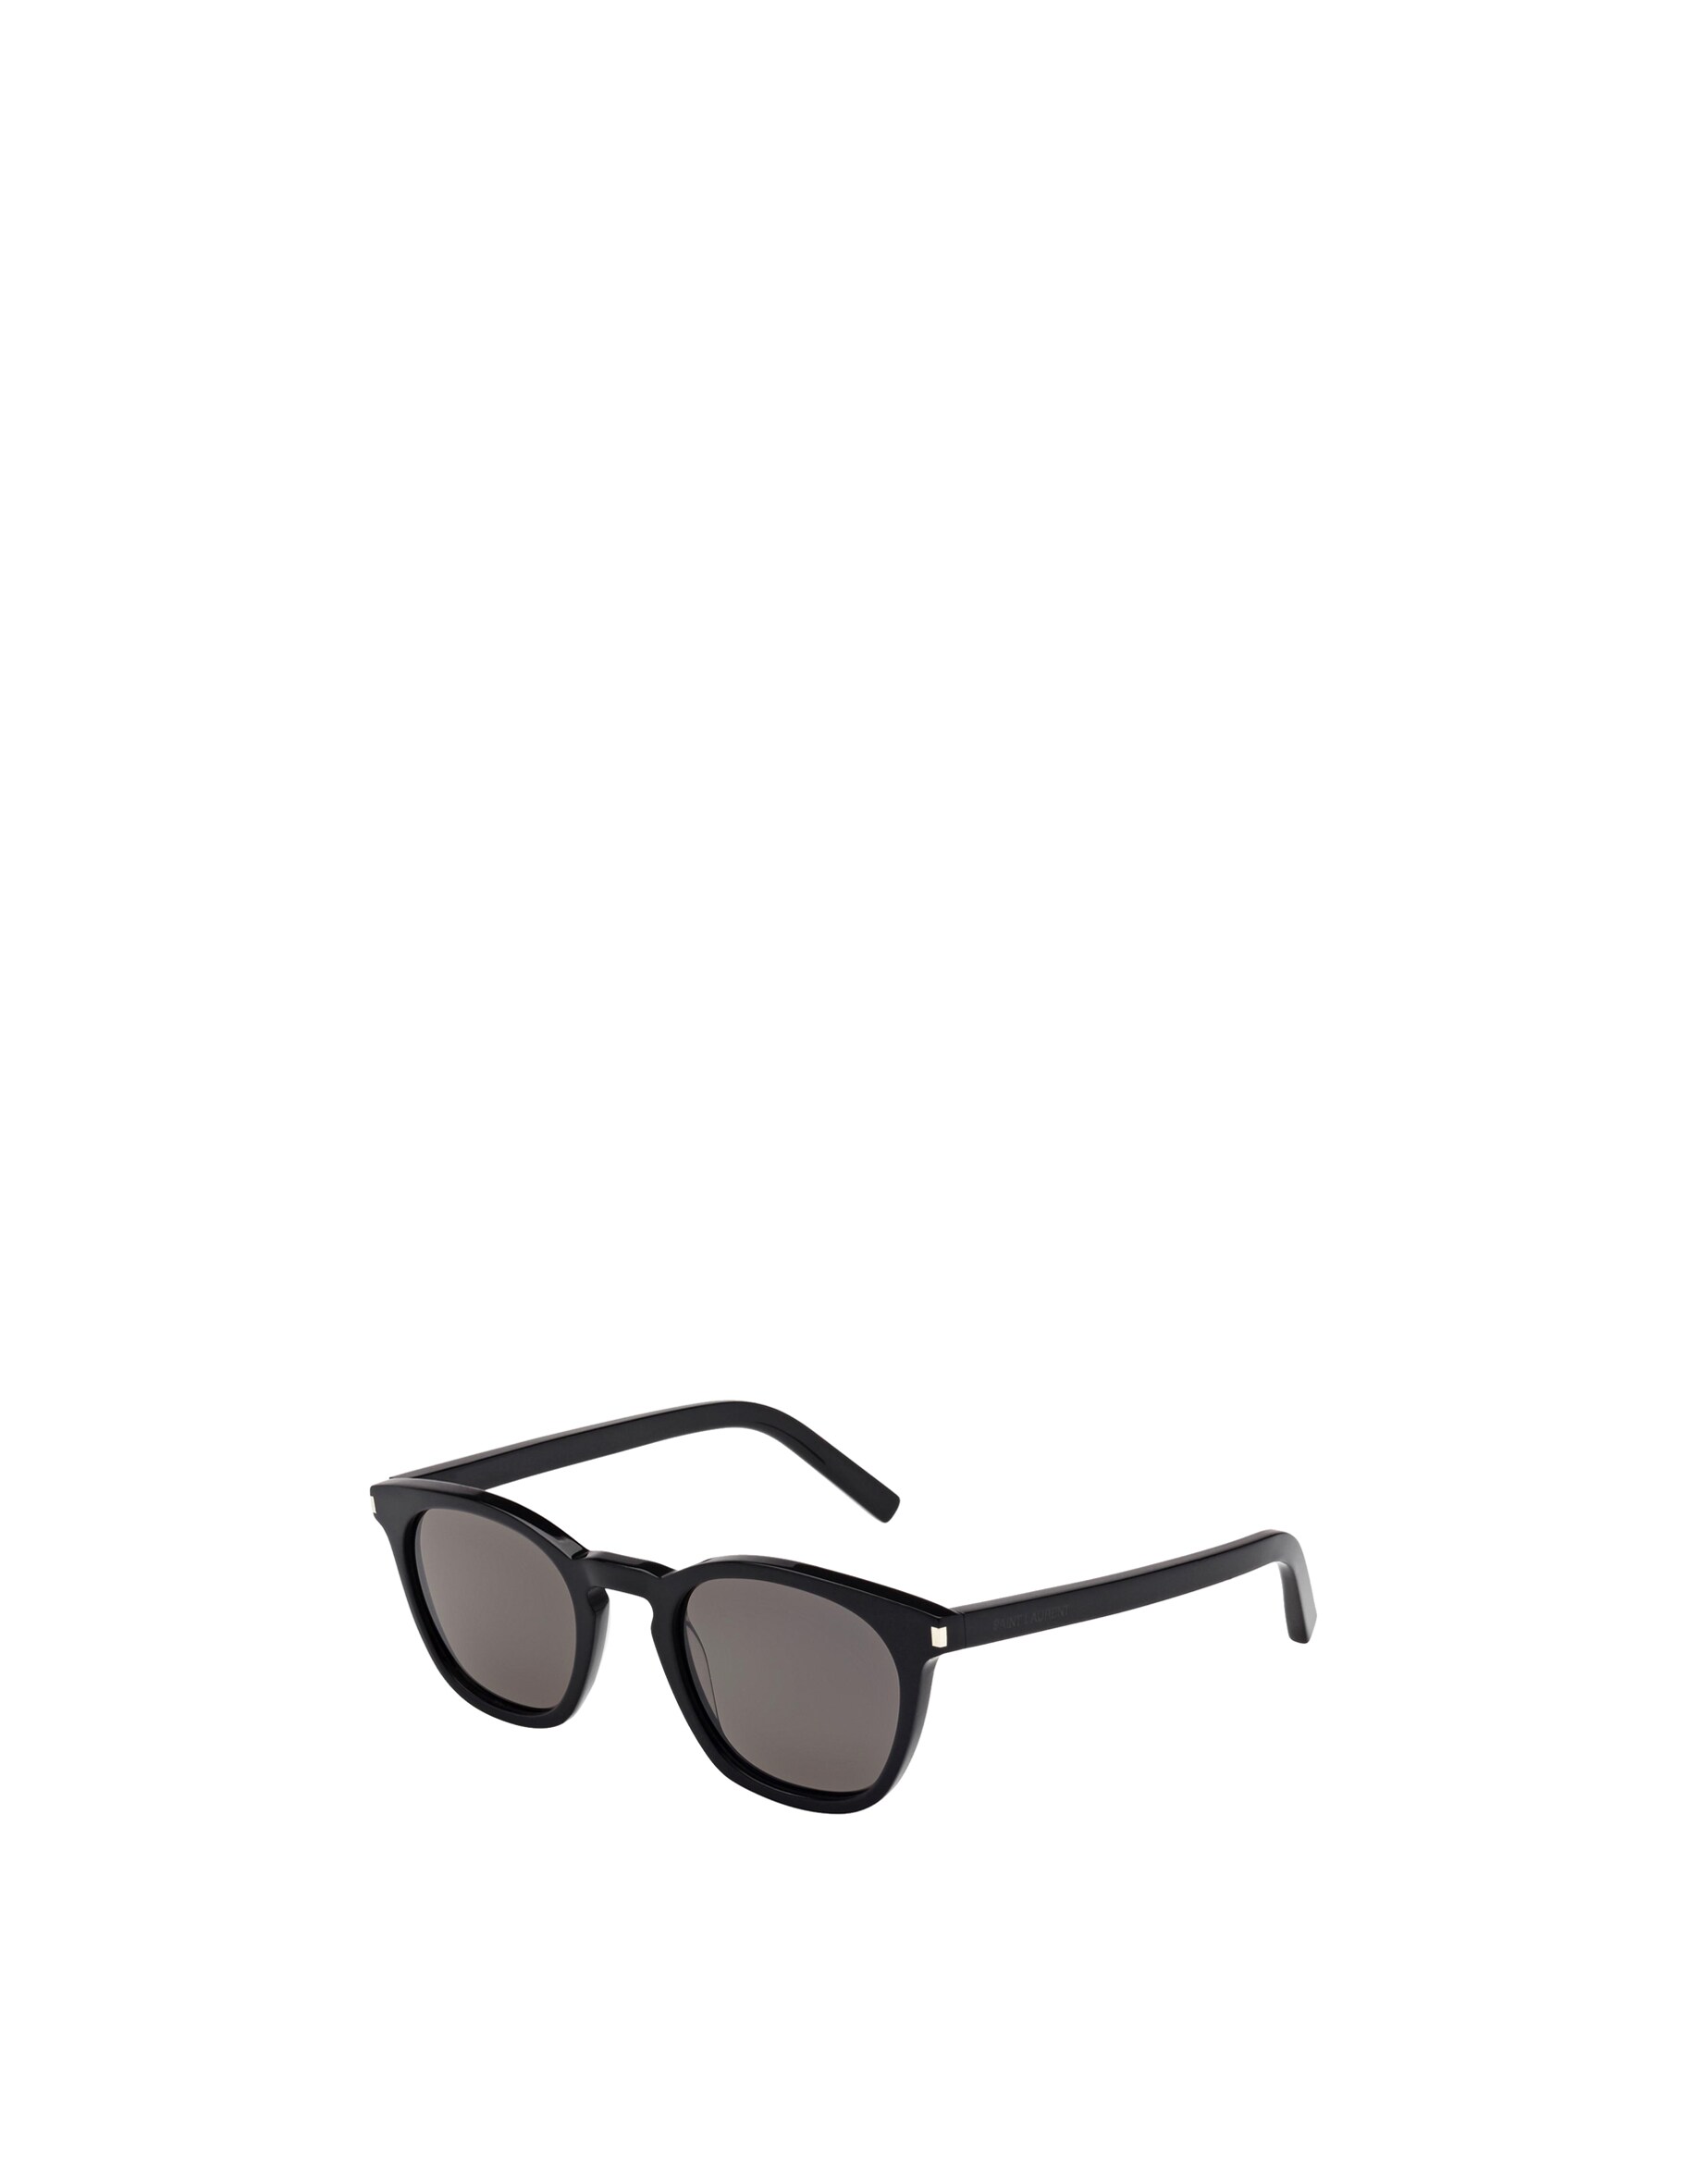 Квадратные классические солнцезащитные очки SL 28 Saint Laurent, цвет Shiny Black